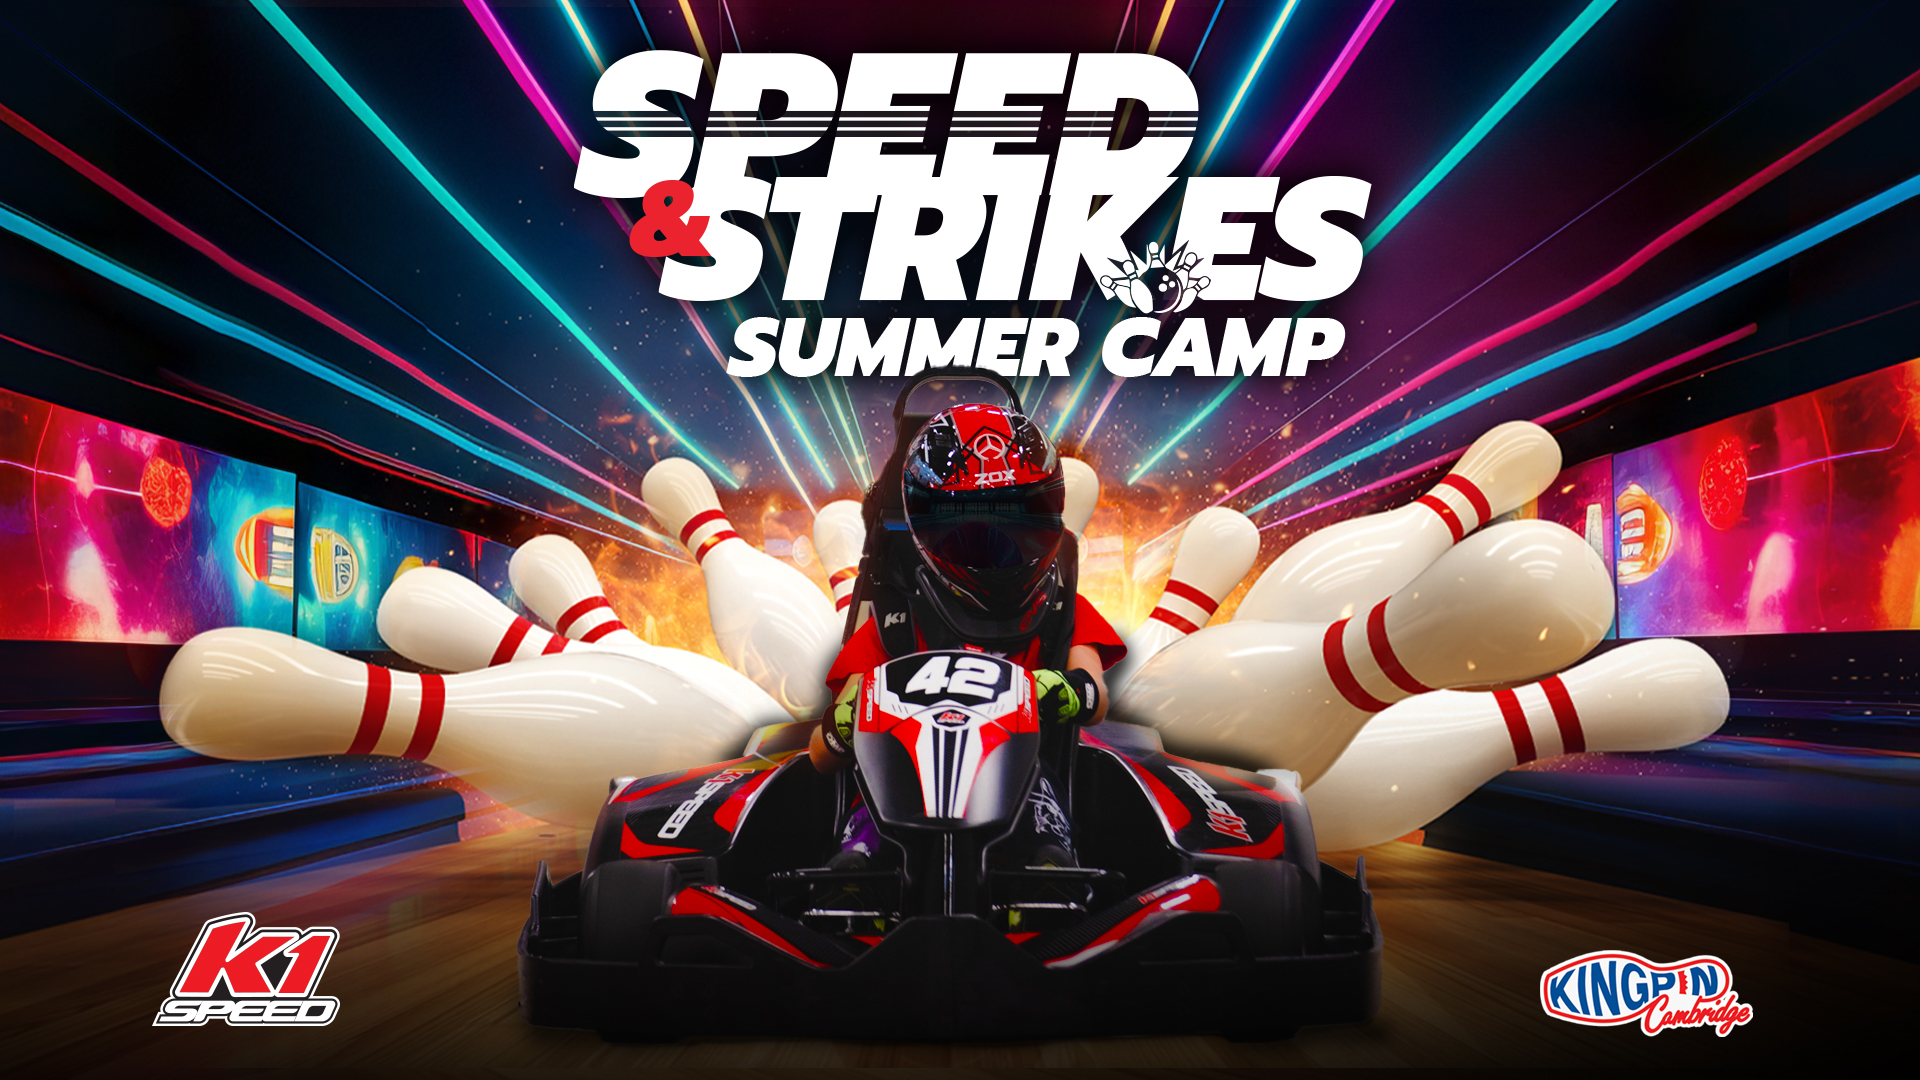 Speed & Strikes - Summer Camp at K1 Speed